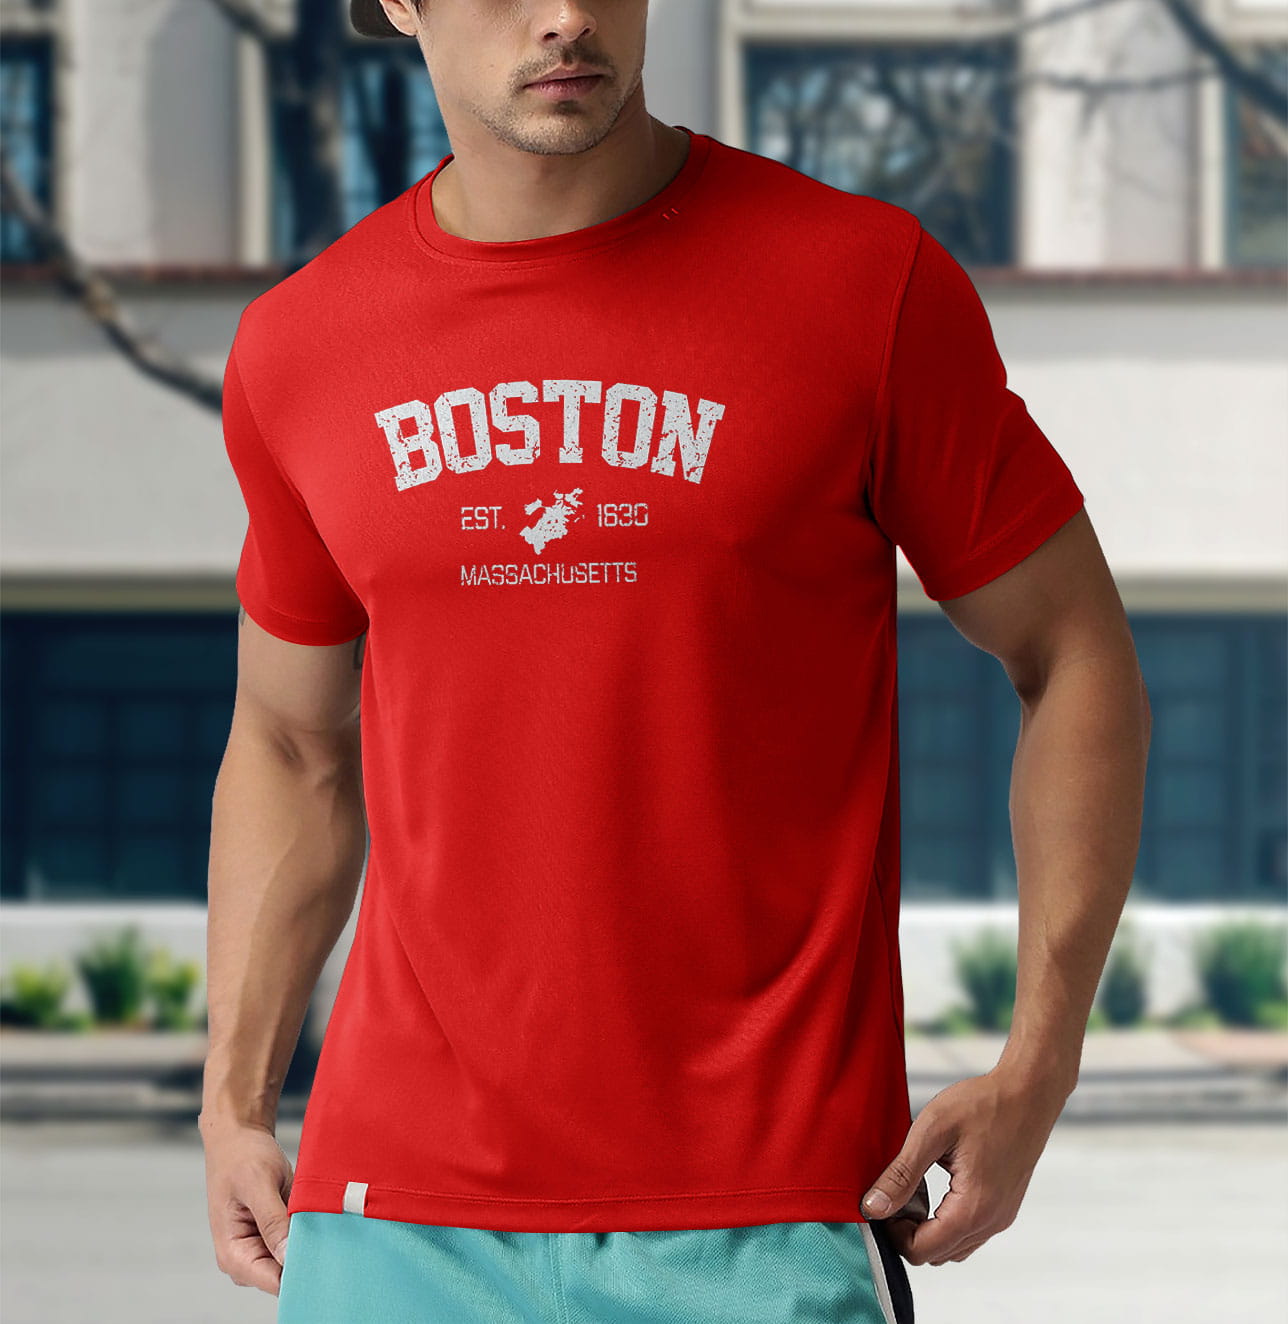 Vintage Boston Massachusetts Est. 1630 T-Shirt - Reallgraphics